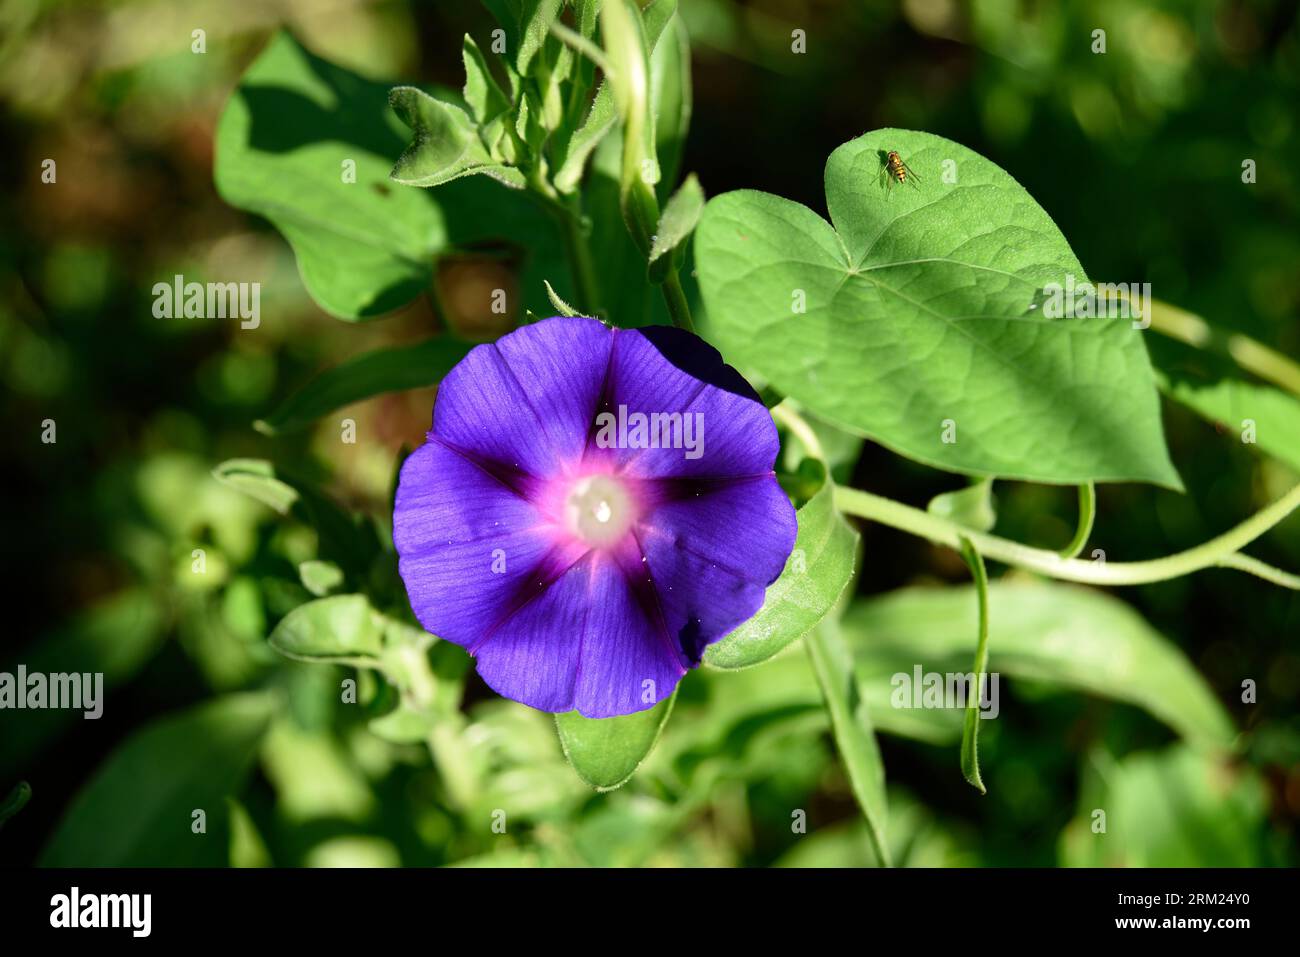 A morning glory vine and flower (Ipomoea nil) grow in a backyard garden in Abingdon, Virginia. Stock Photo